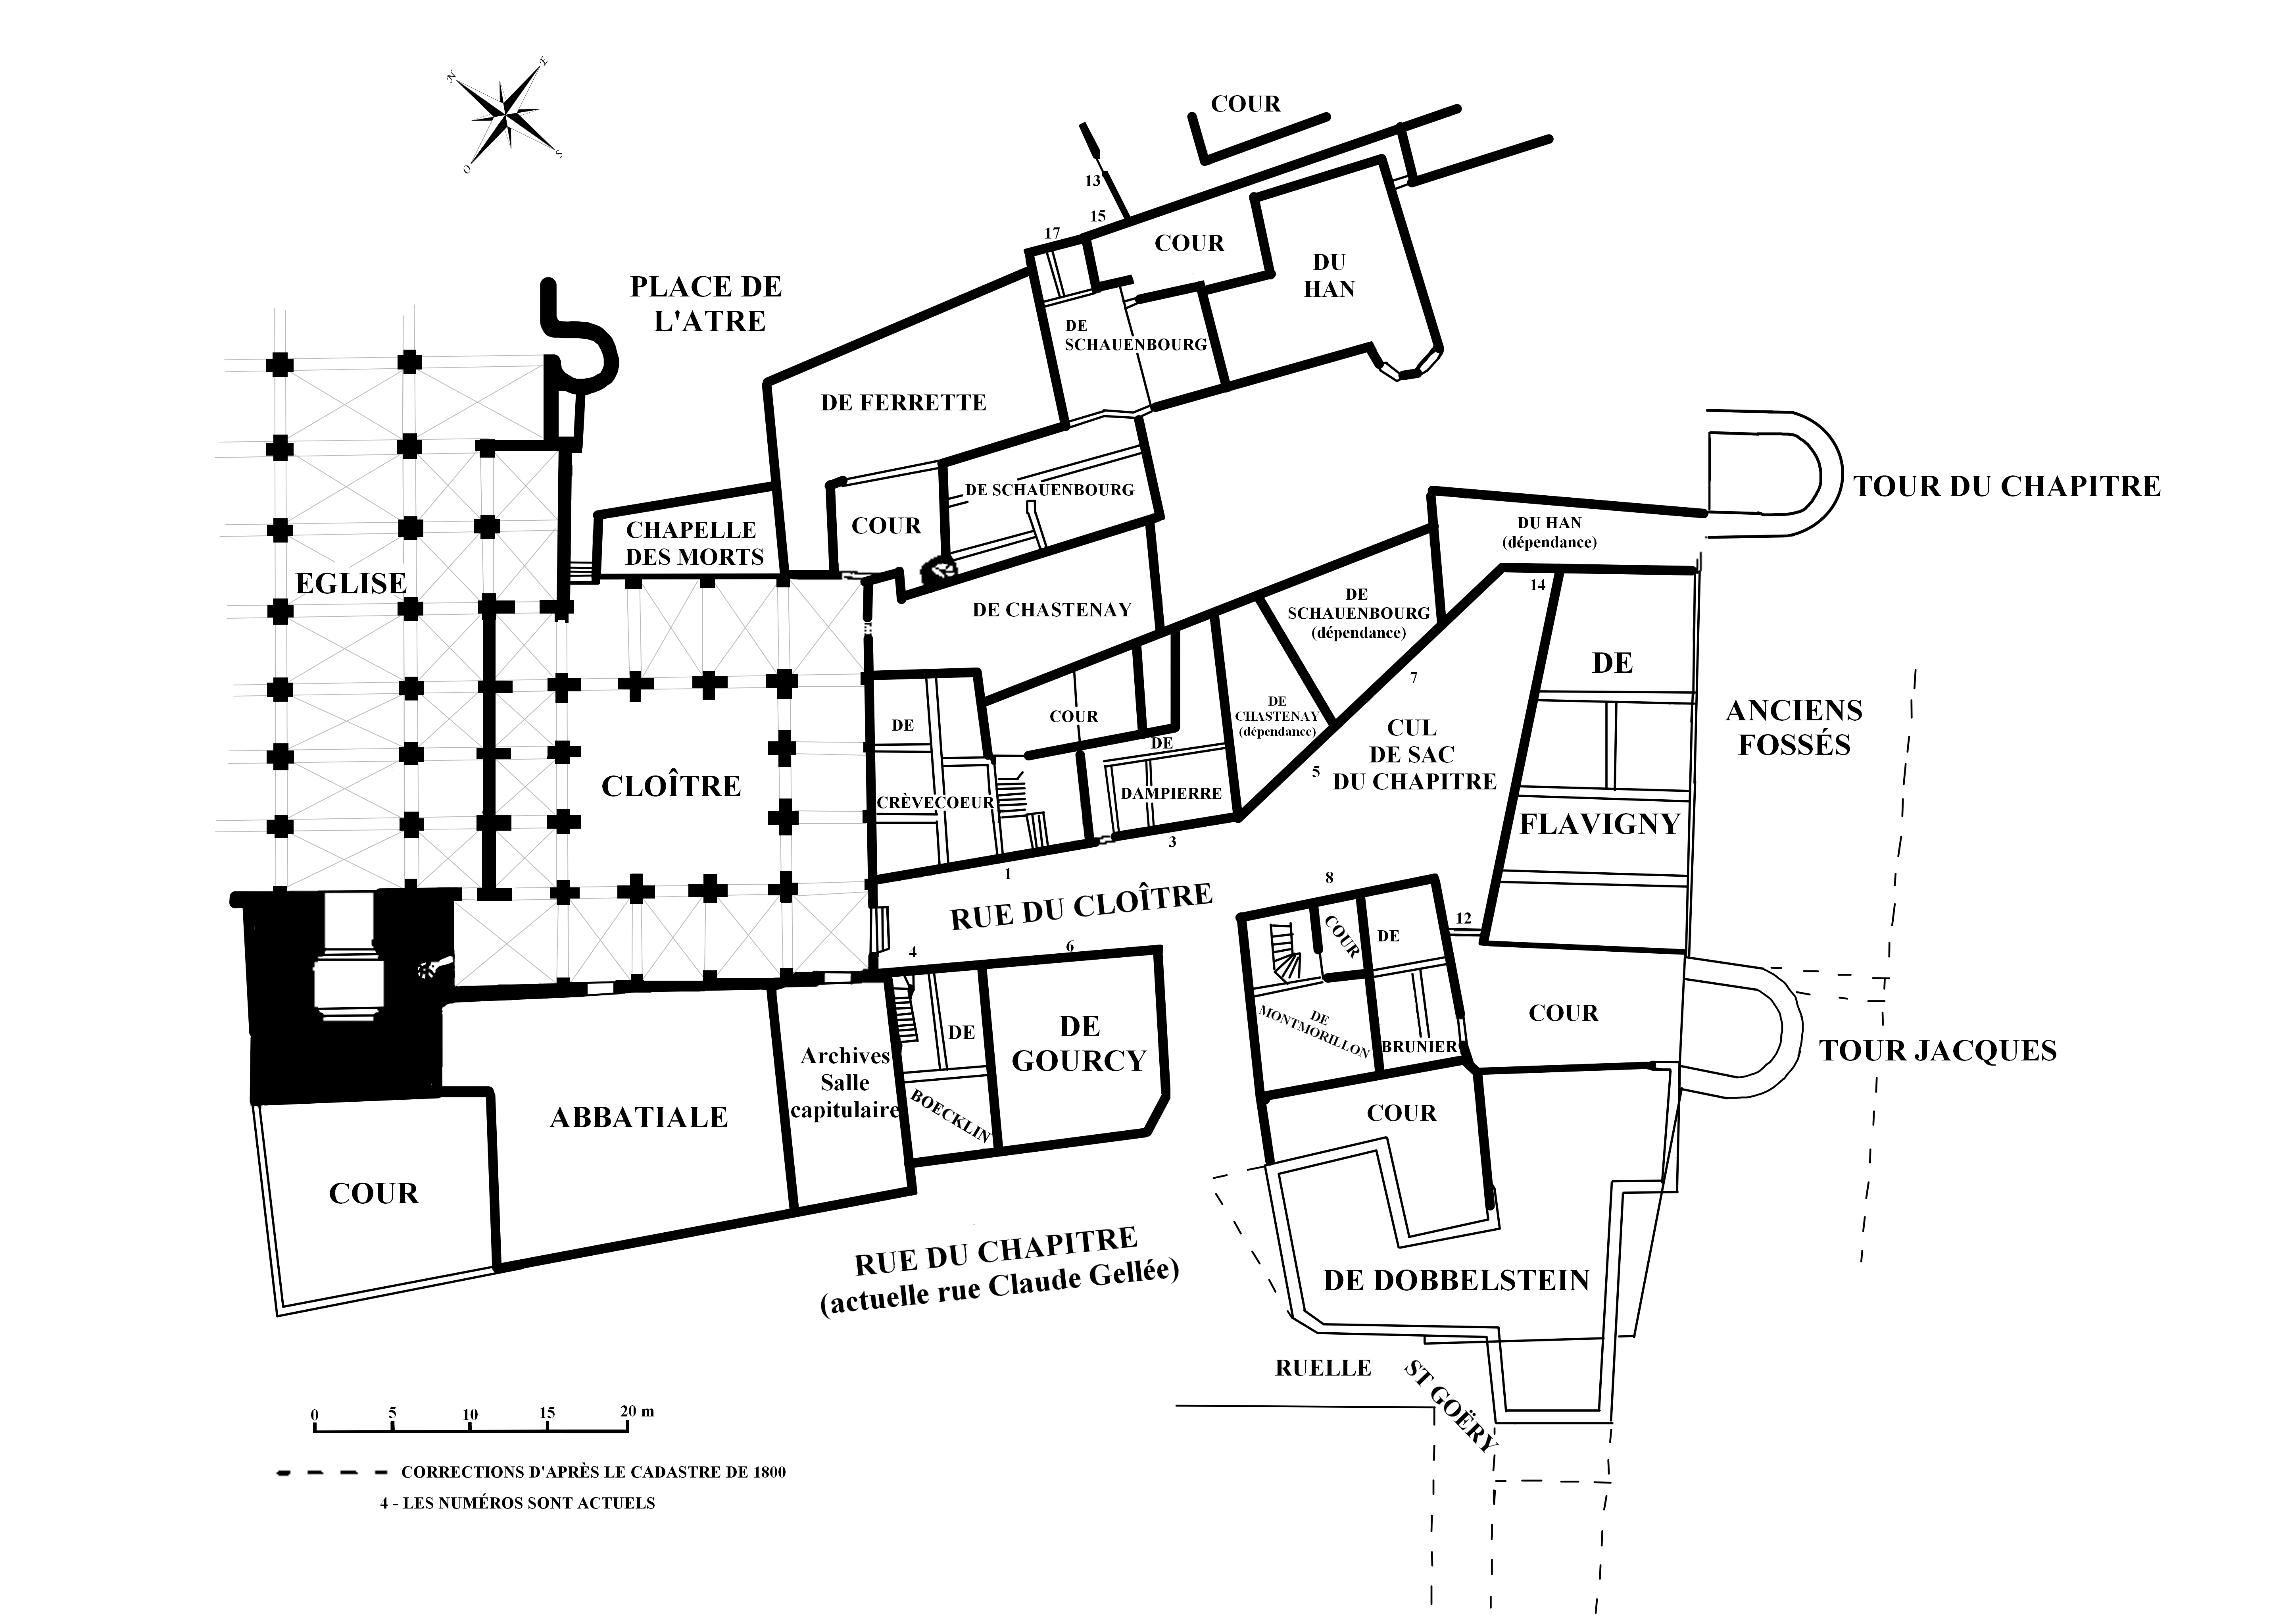 Contenu du Plan du quartier du Chapitre vers 1790